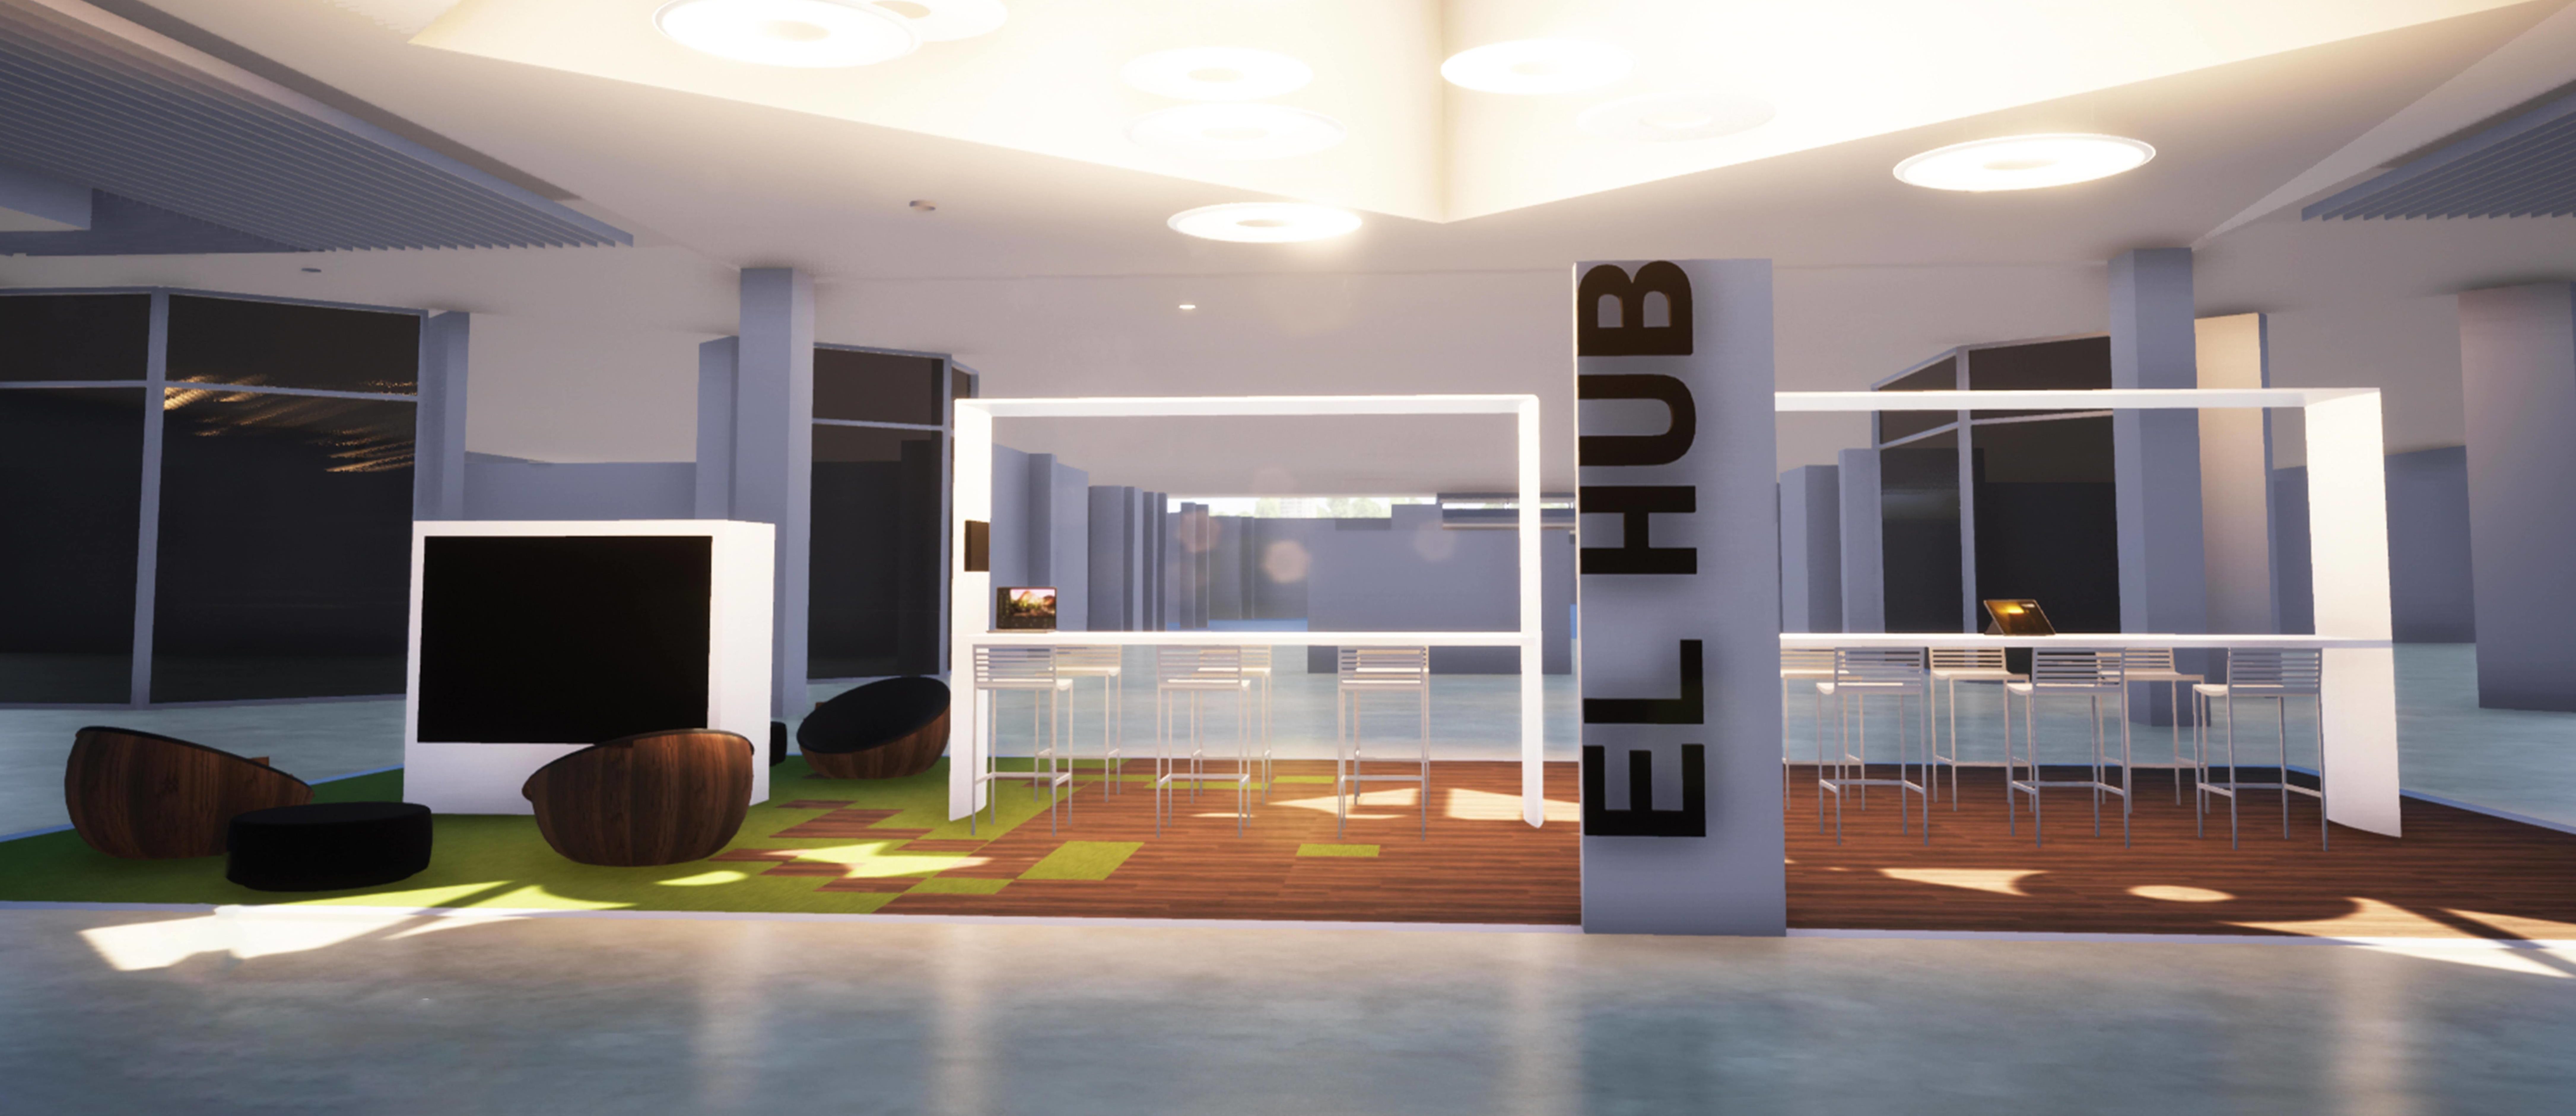 Concepto del lounge, bautizado como el “Hub” , de Céntrico.